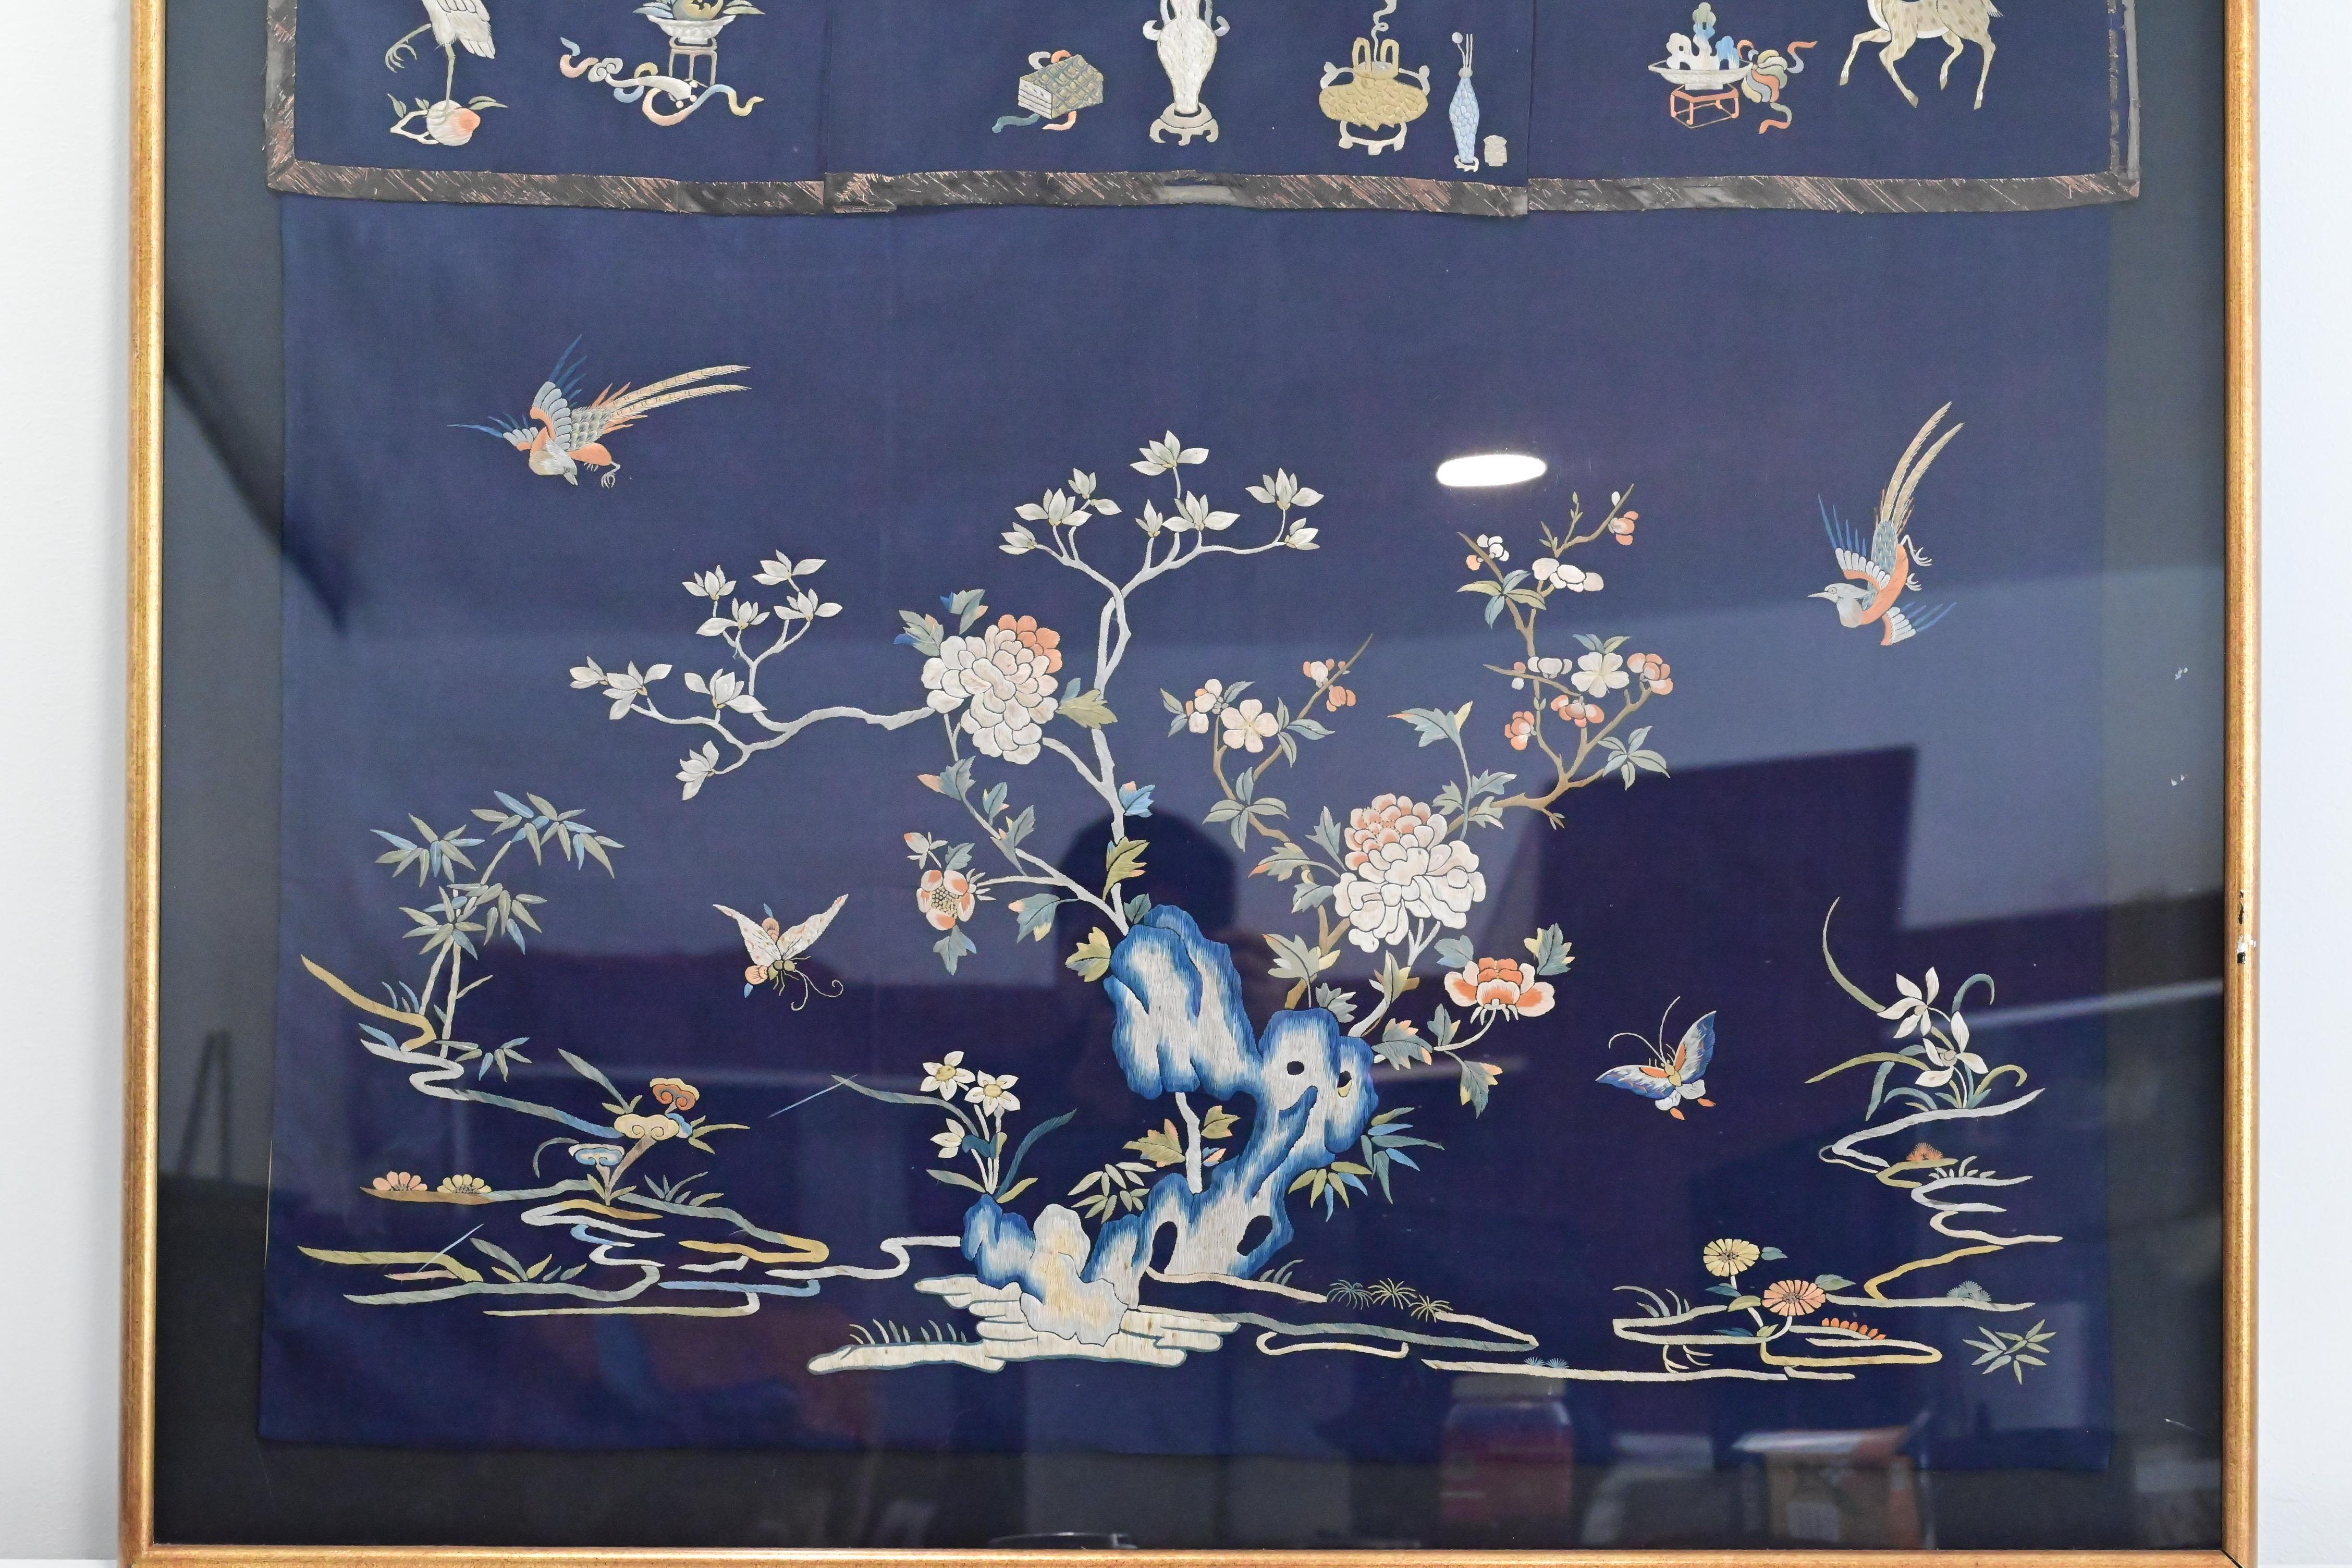 Diese exquisite chinesische Tischdecke aus der Qing-Zeit ist ein wahres Kunstwerk. Sie ist aus luxuriöser Seide und Stoff gefertigt und zeigt mit ihren filigranen Details die außergewöhnliche Handwerkskunst ihrer Schöpfer. Dieses Stück ist eine